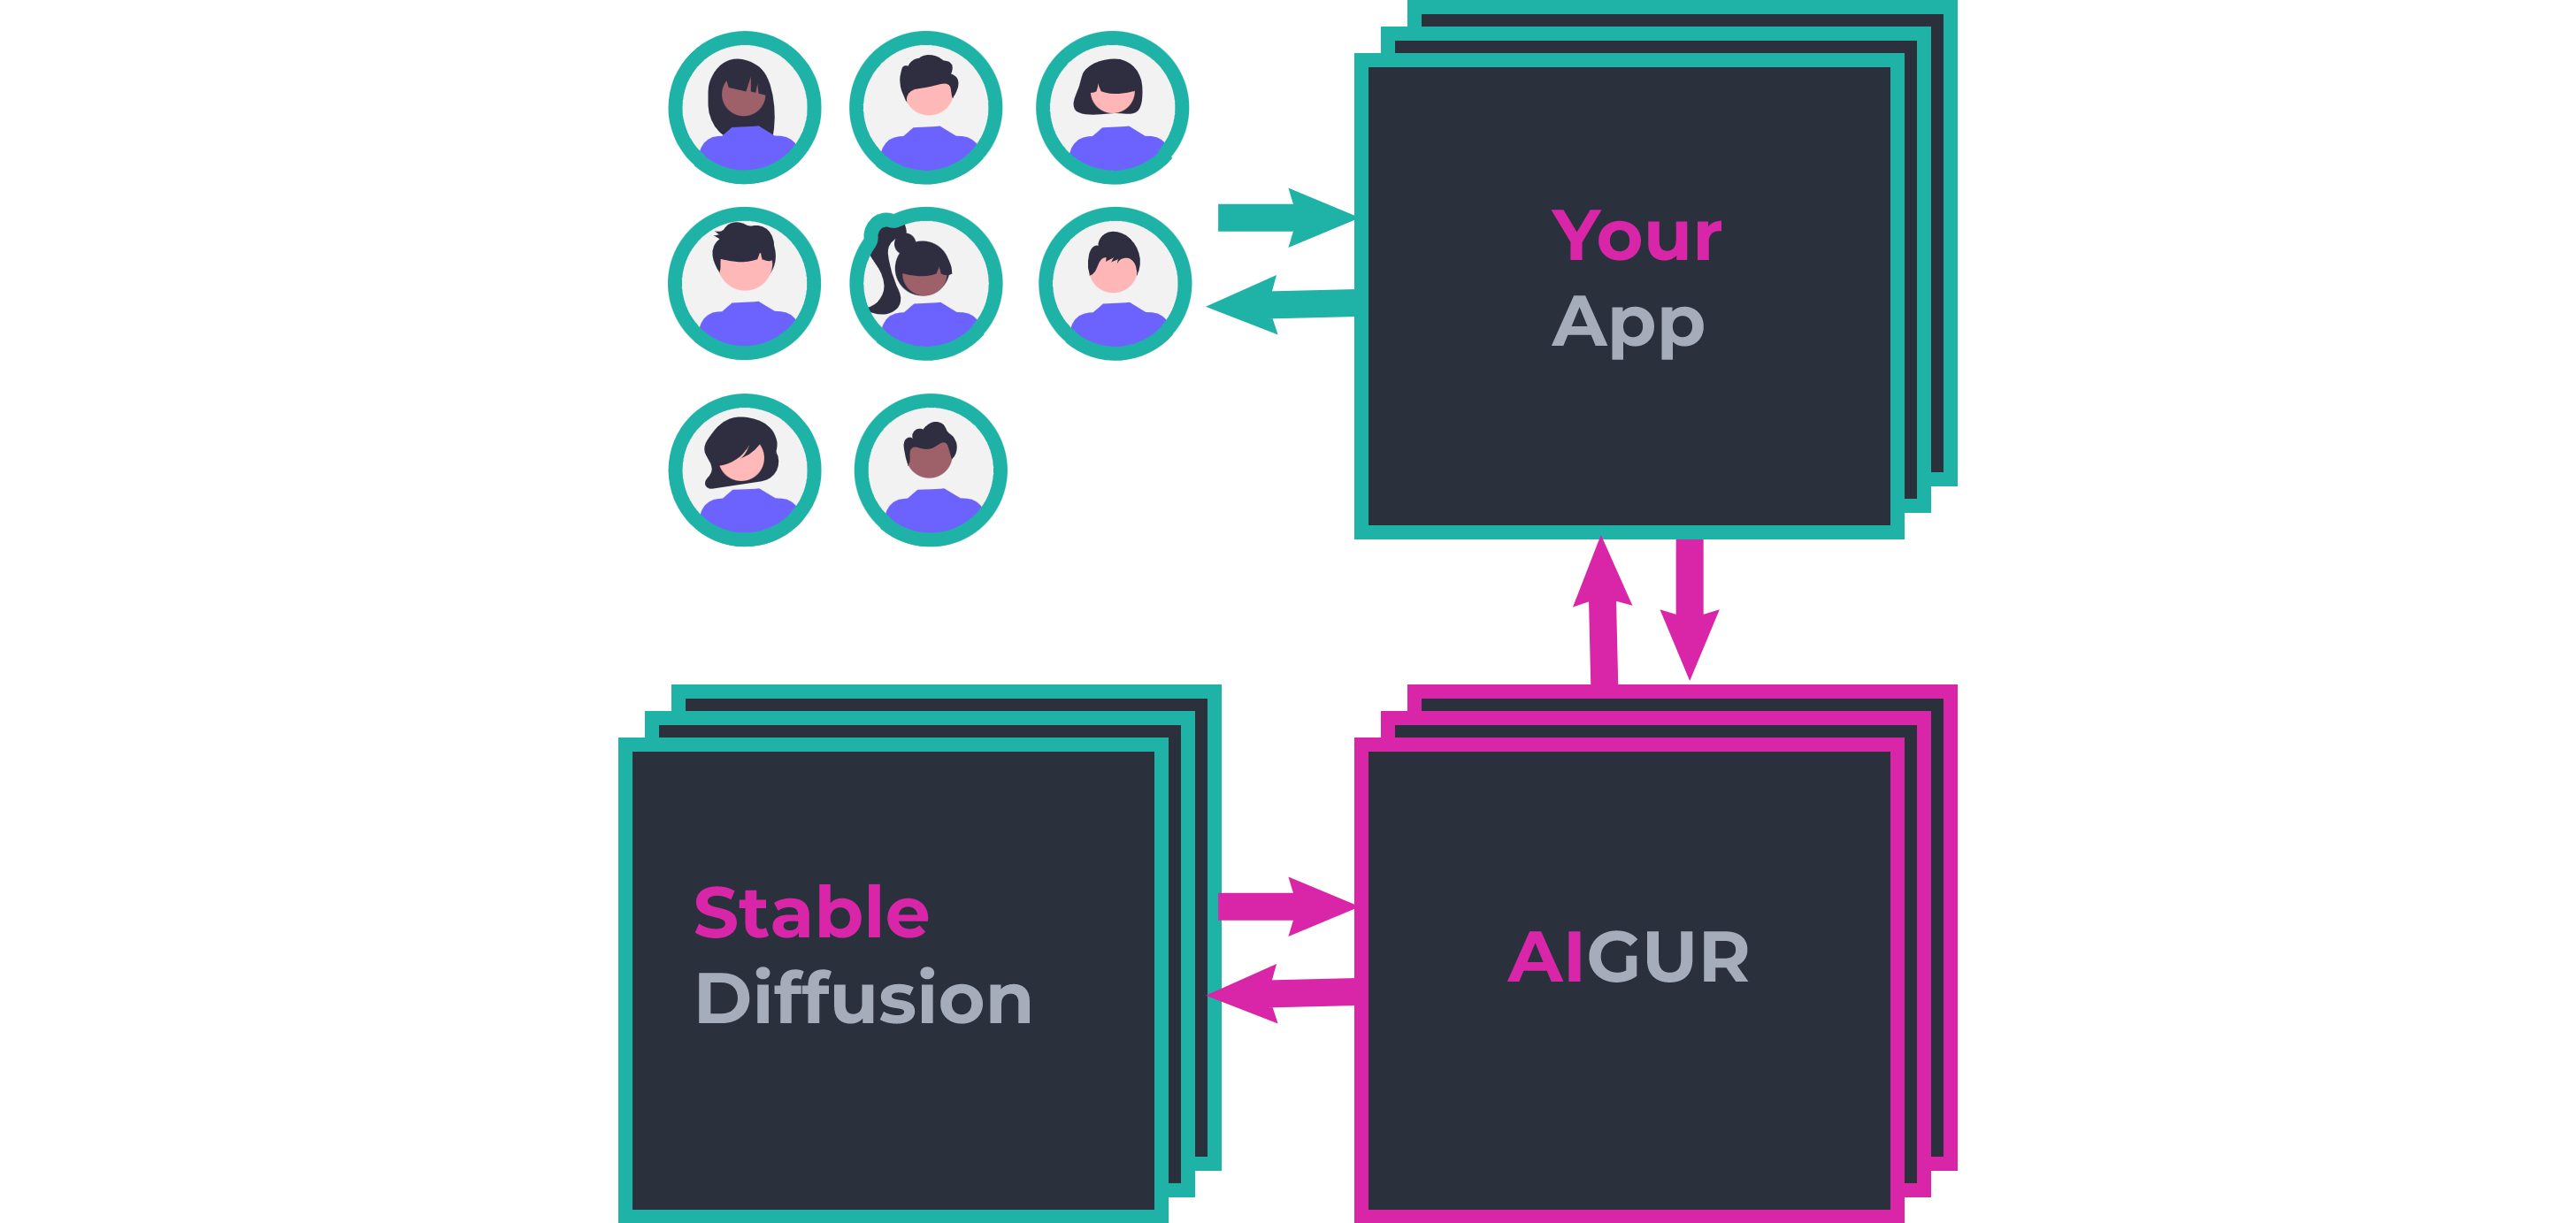 Aigur-マルチユーザー生成AIベースのアプリケーションを構築します